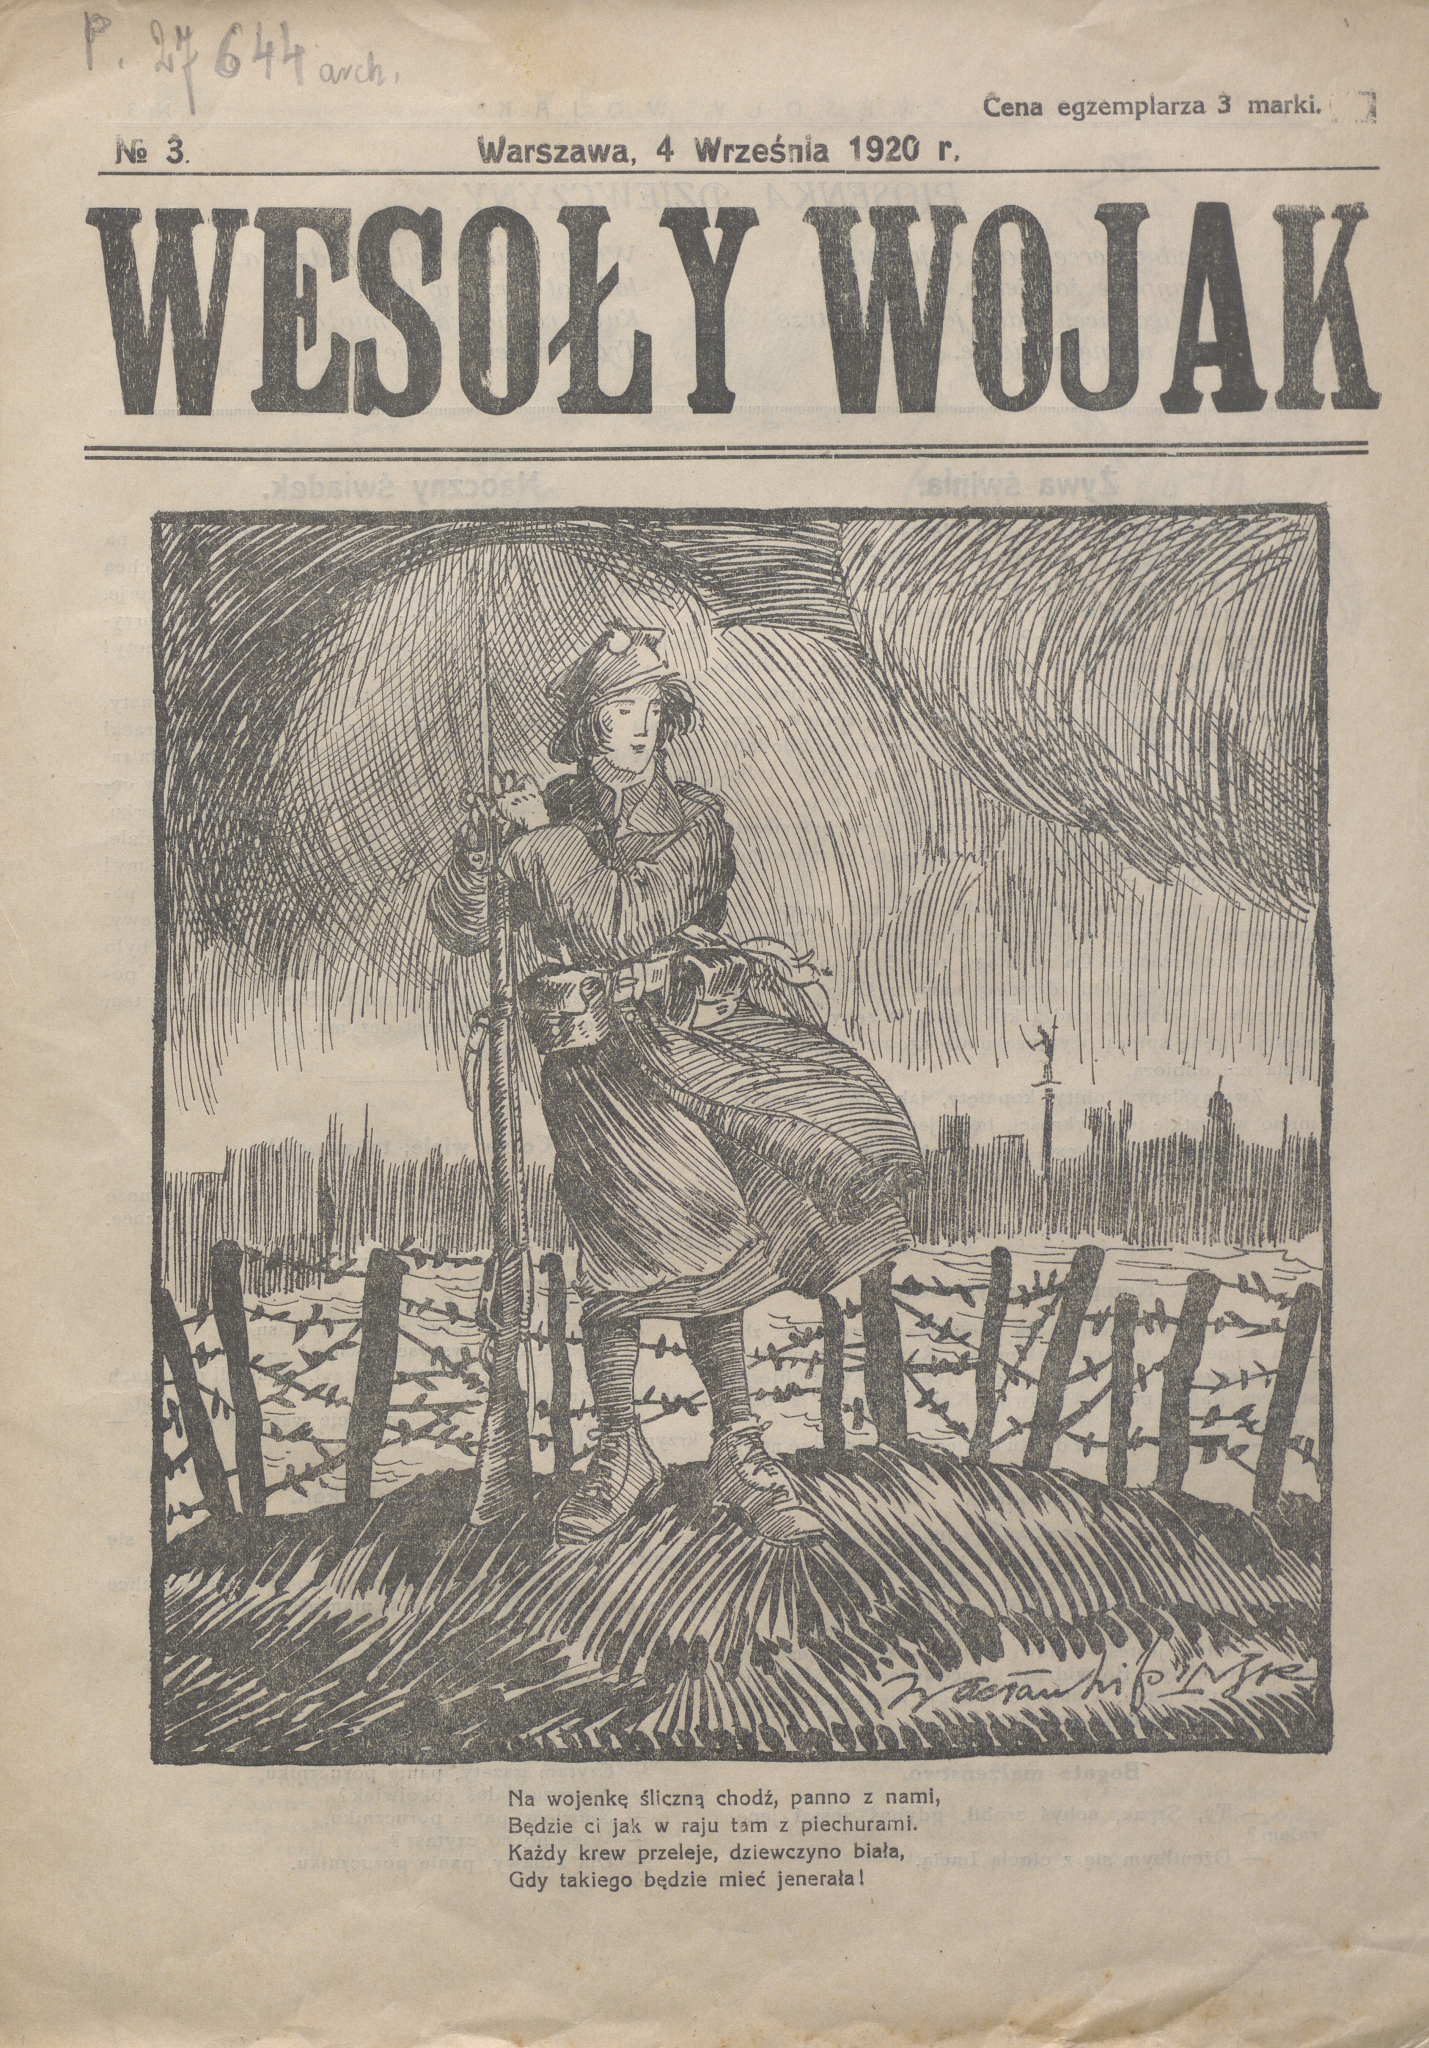 Jednodniówka „Wesoły Wojak” z 4 września 1920 r. Źródło: Biblioteka Narodowa